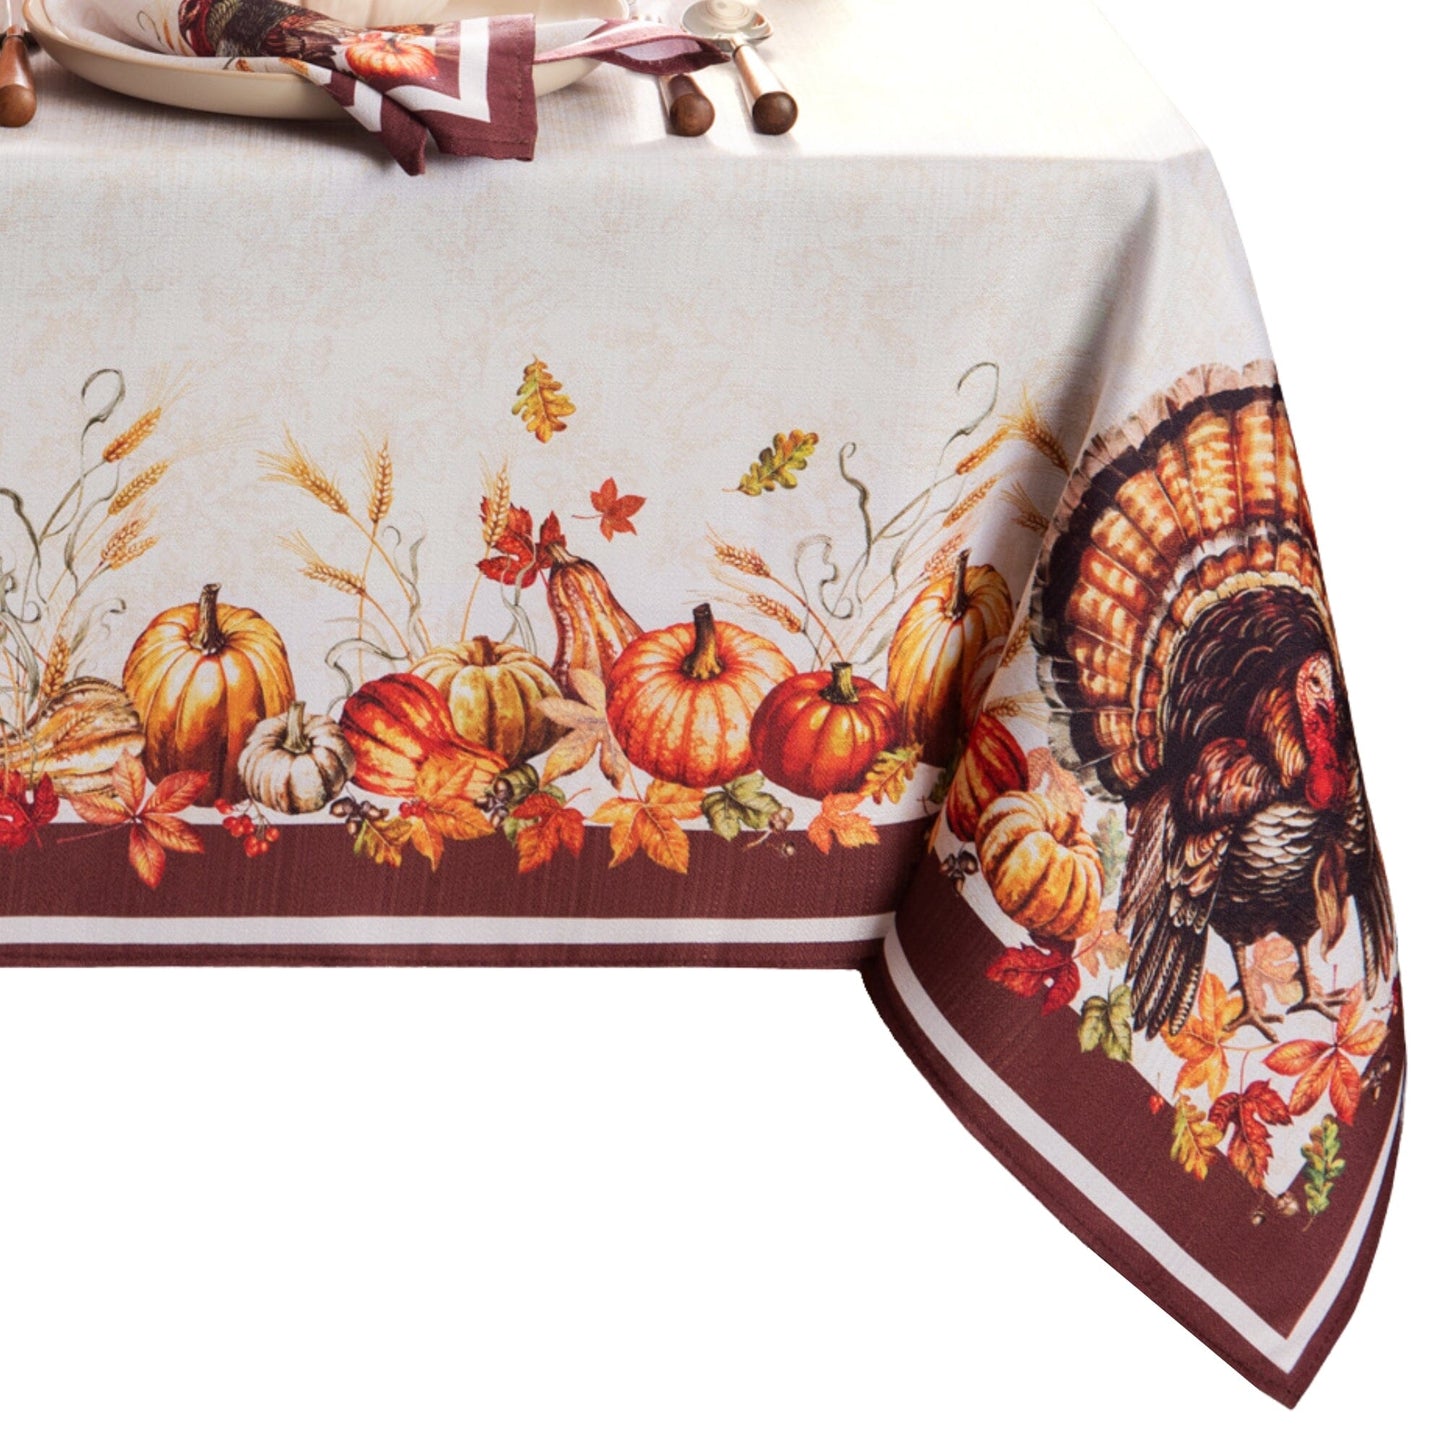 Autumn Heritage Turkey Engineered Tablecloth – Elrene Home Fashions